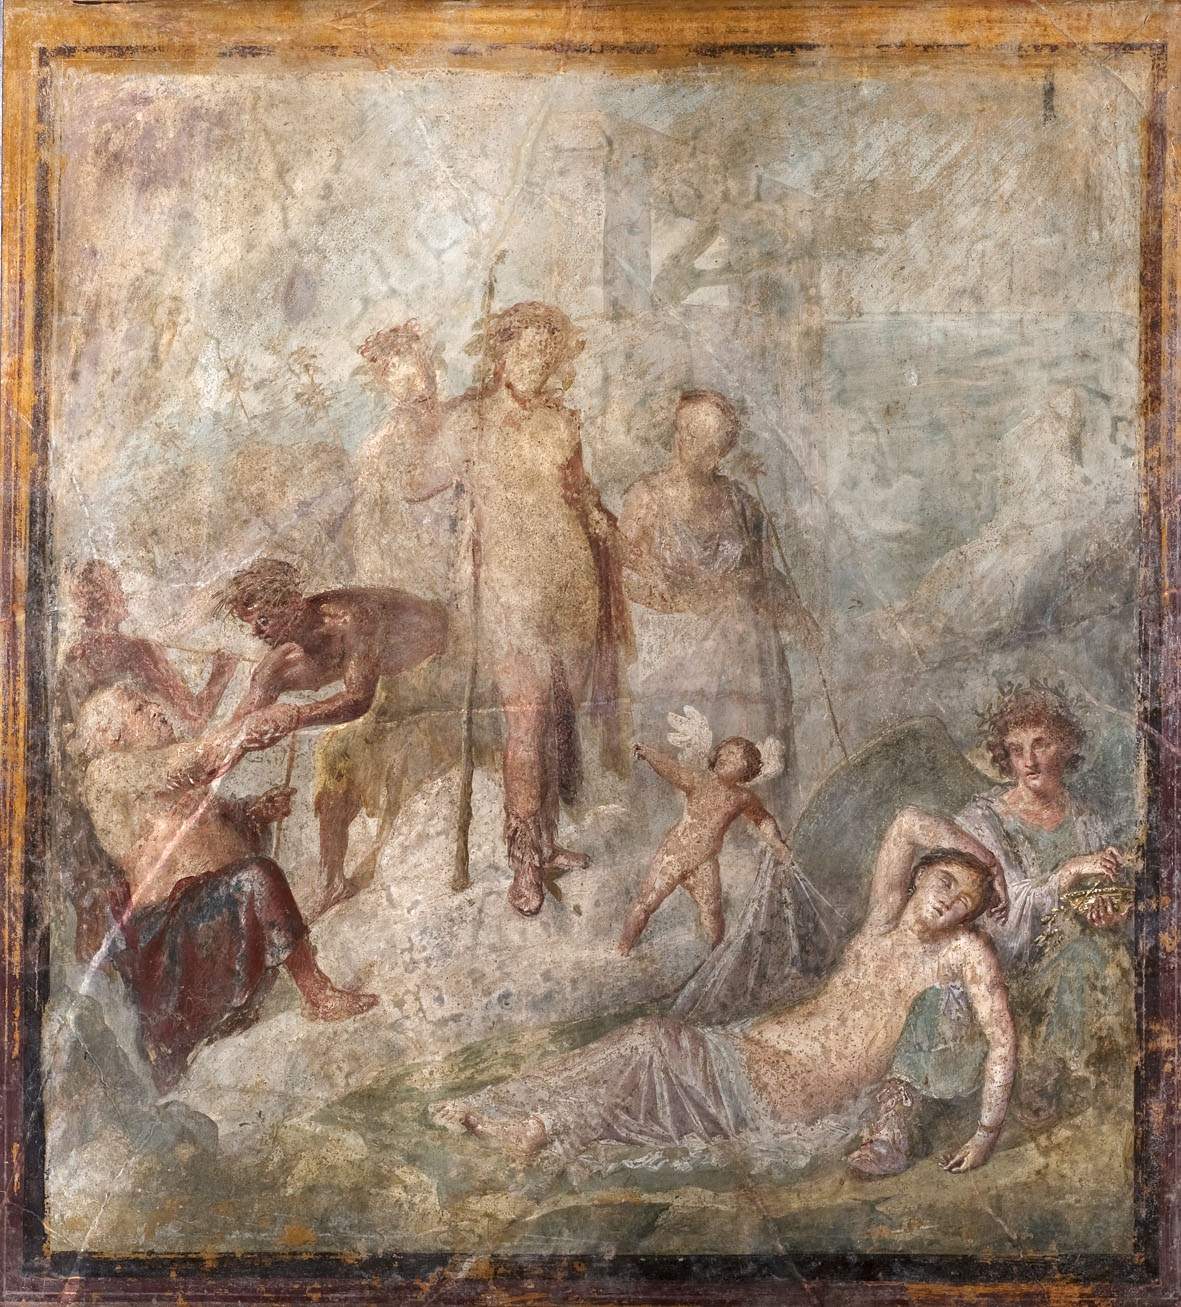 Les fresques de la domus romaine exposées à Crémone et au-delà